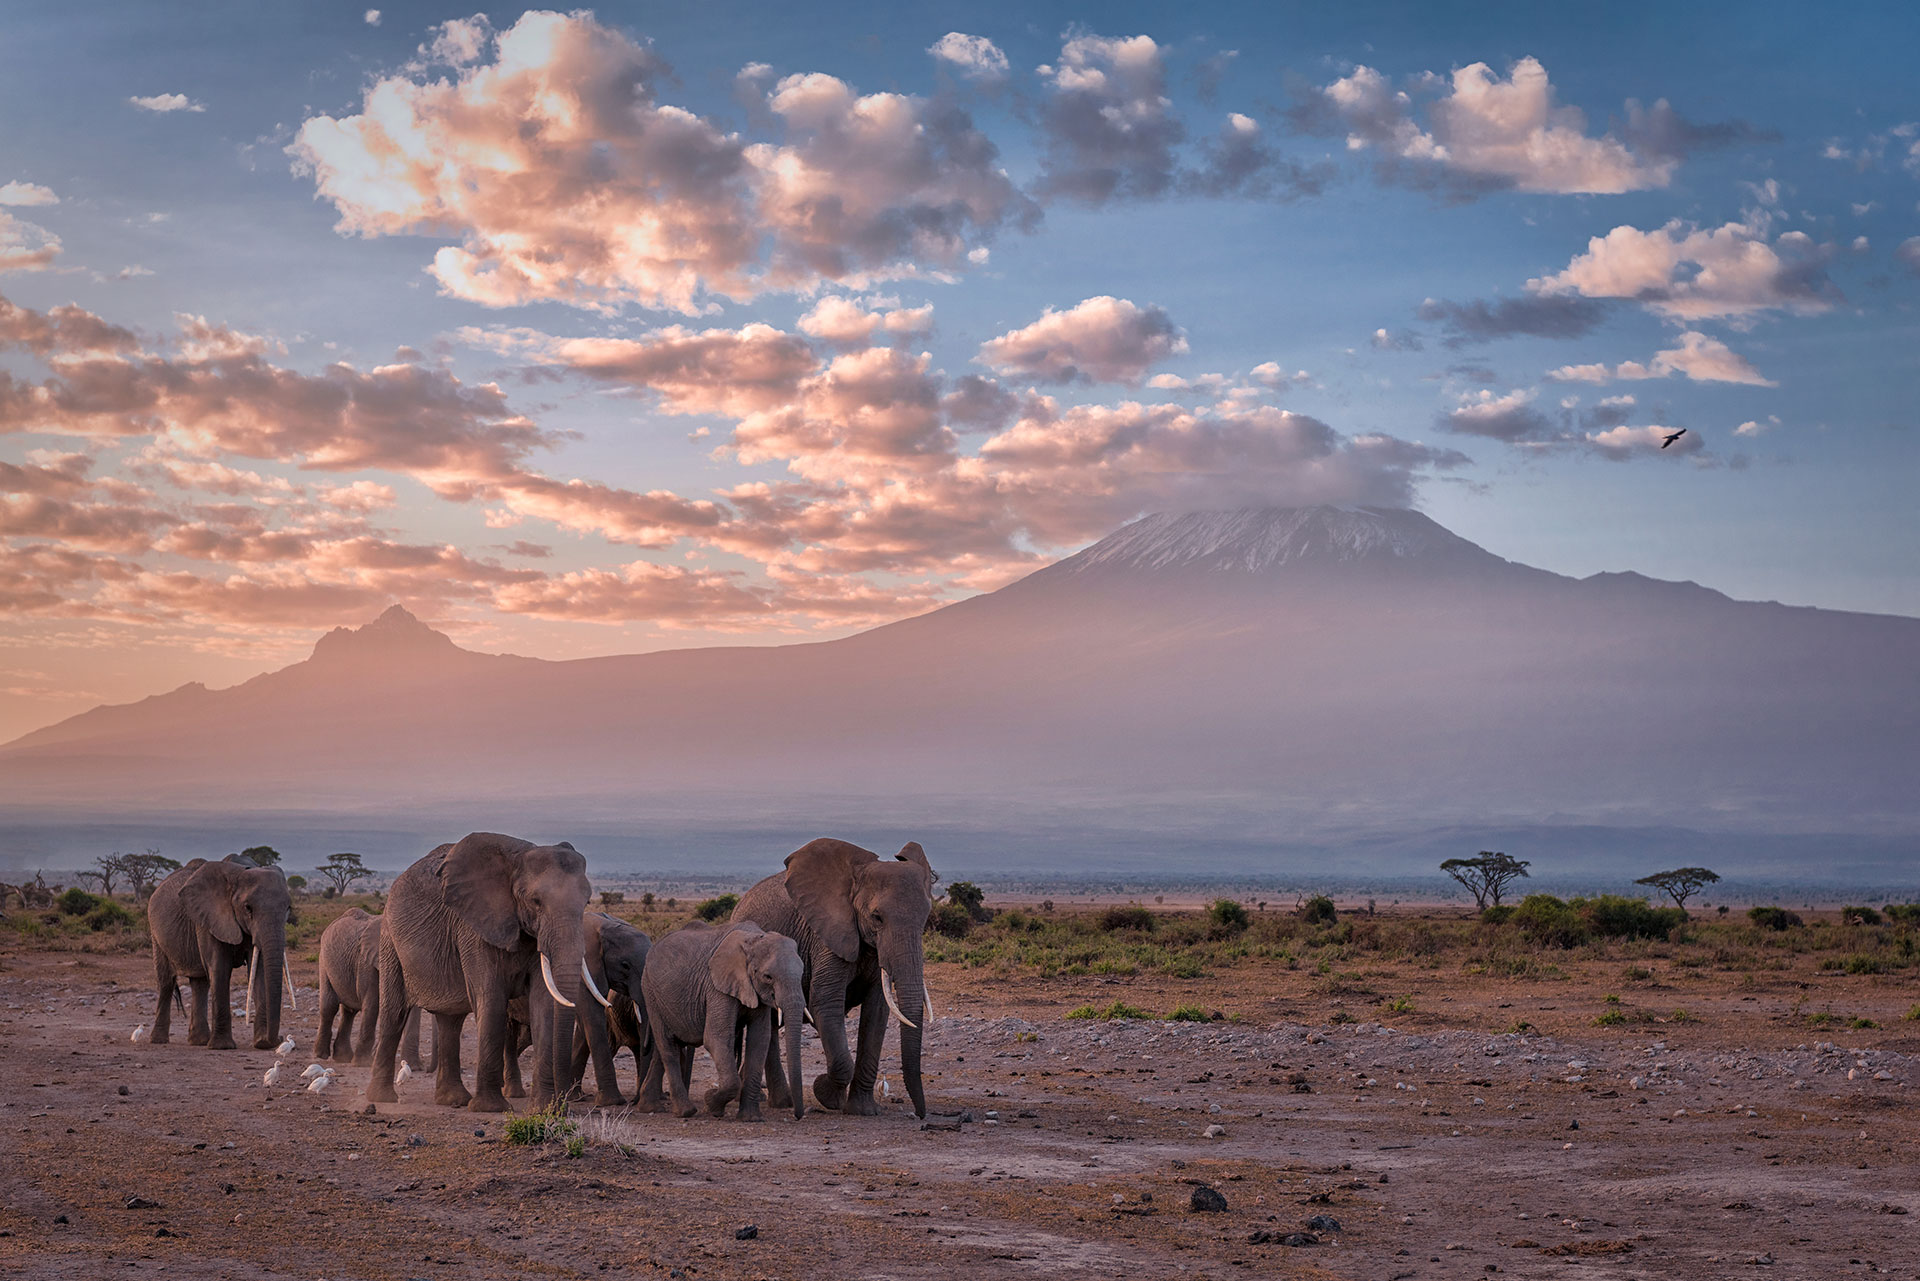 Las nieves del Kilimanjaro fueron inmortalizadas por el escritor Ernest Hemingway (Getty Images)